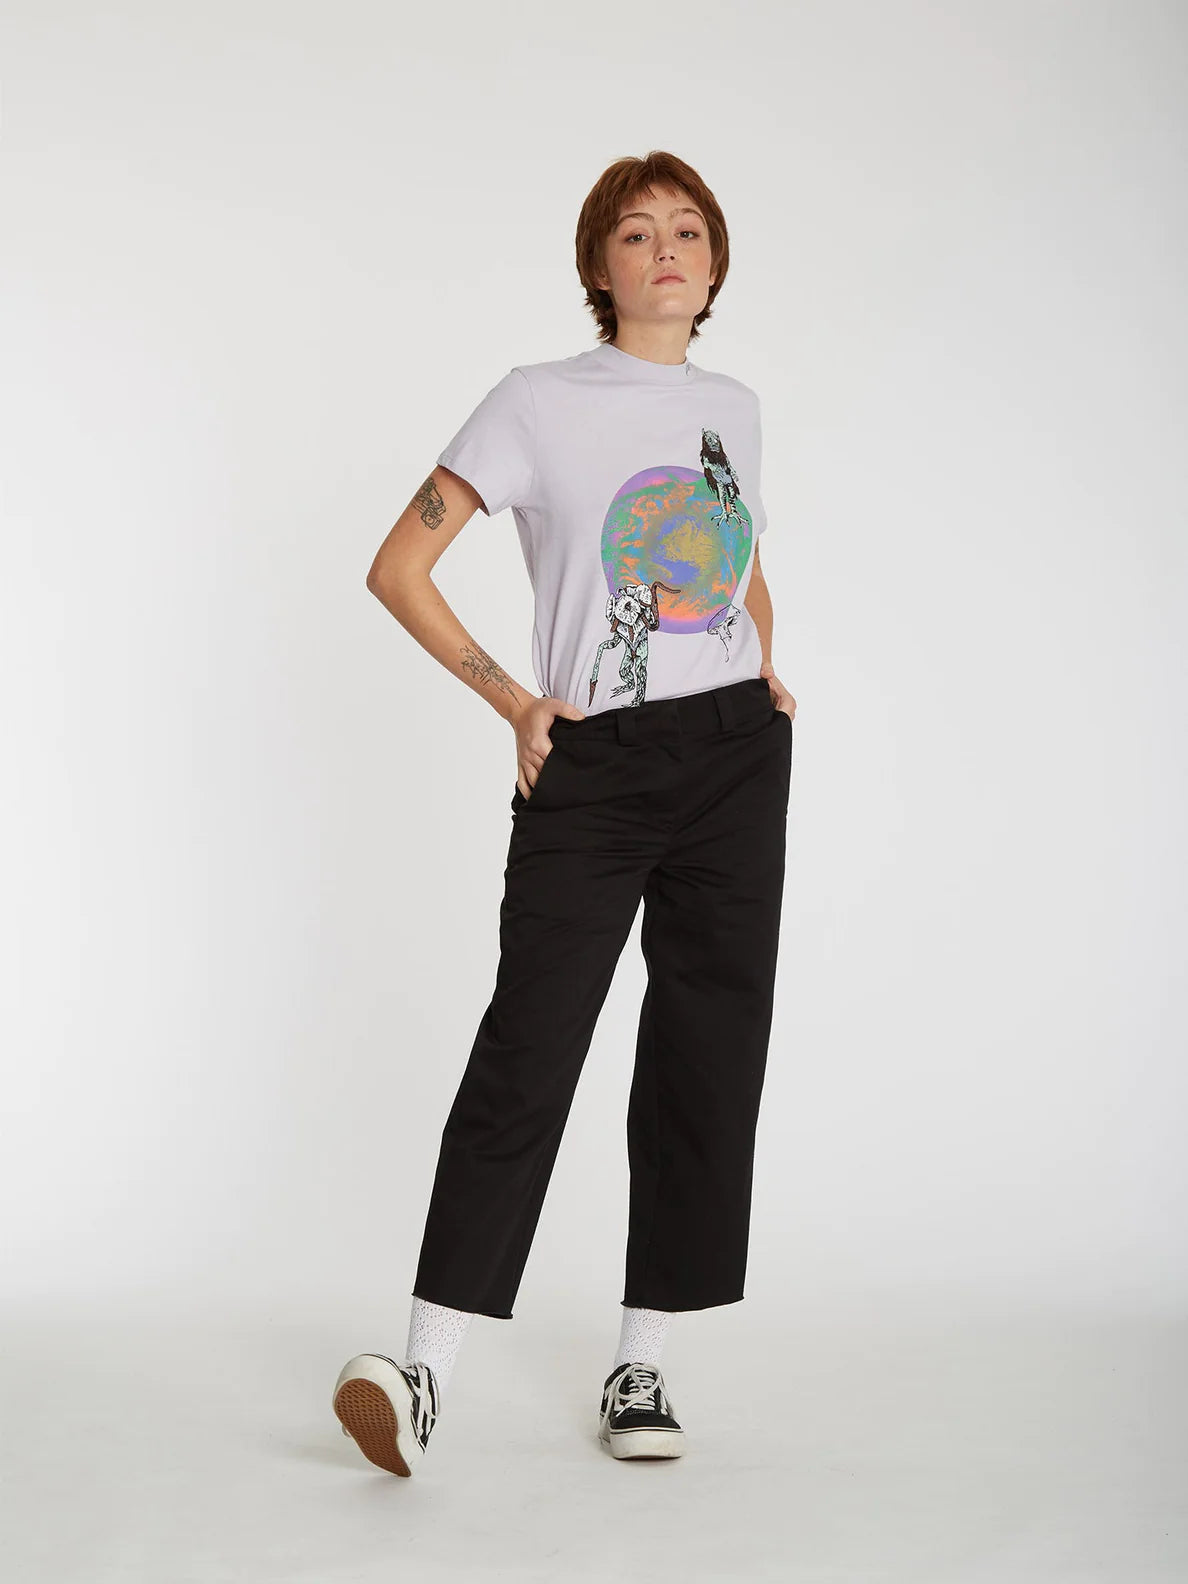 Camiseta Chica Volcom Chrissie Abbott x French Lavender